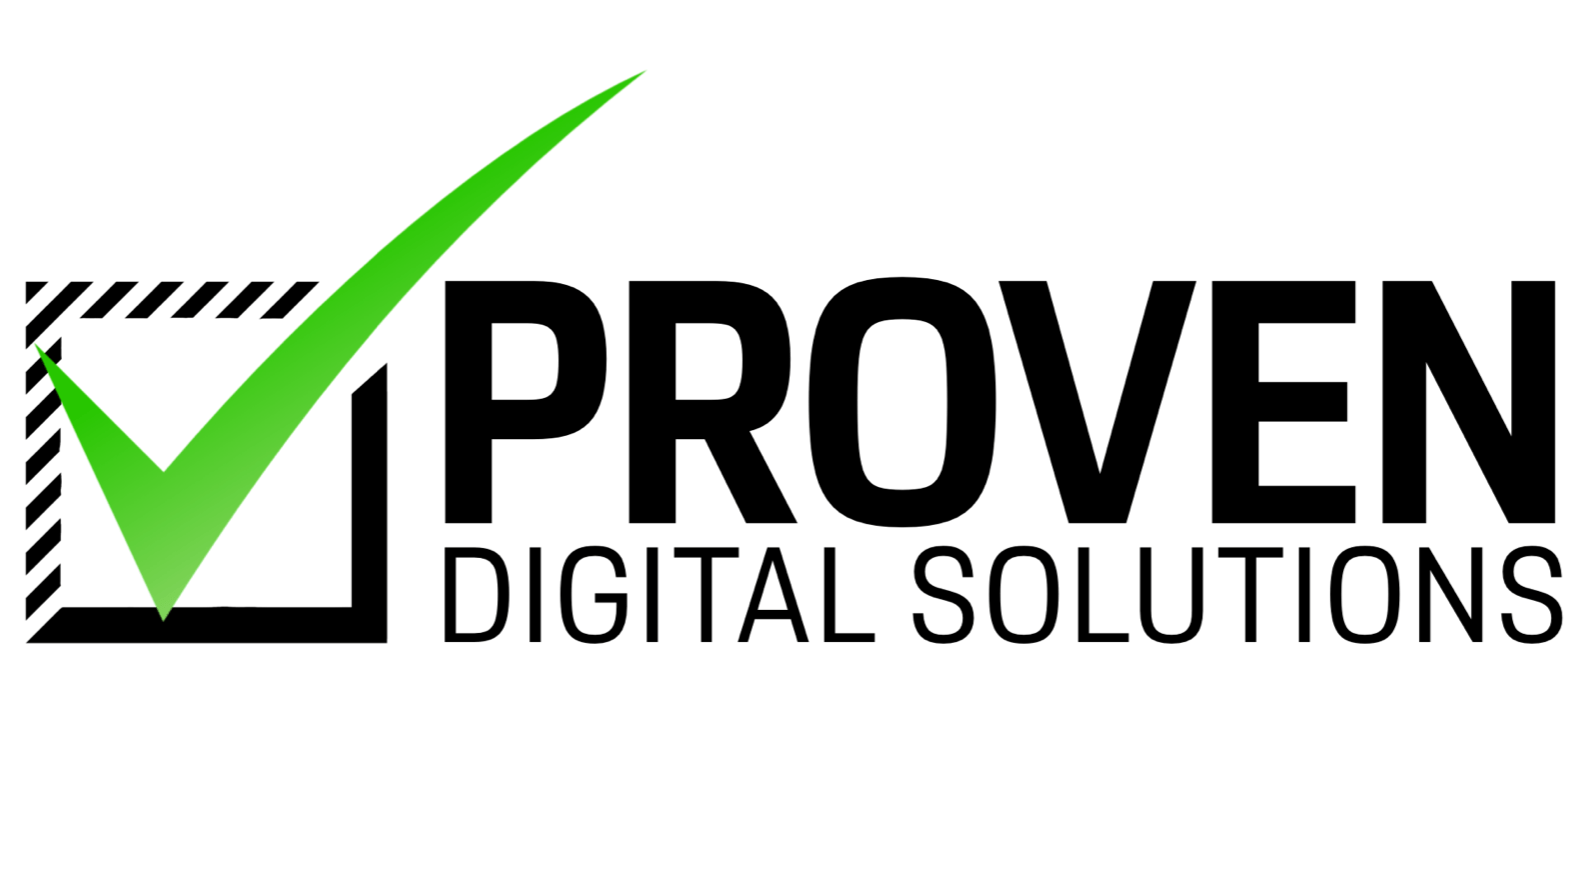 Proven Digital Solutions